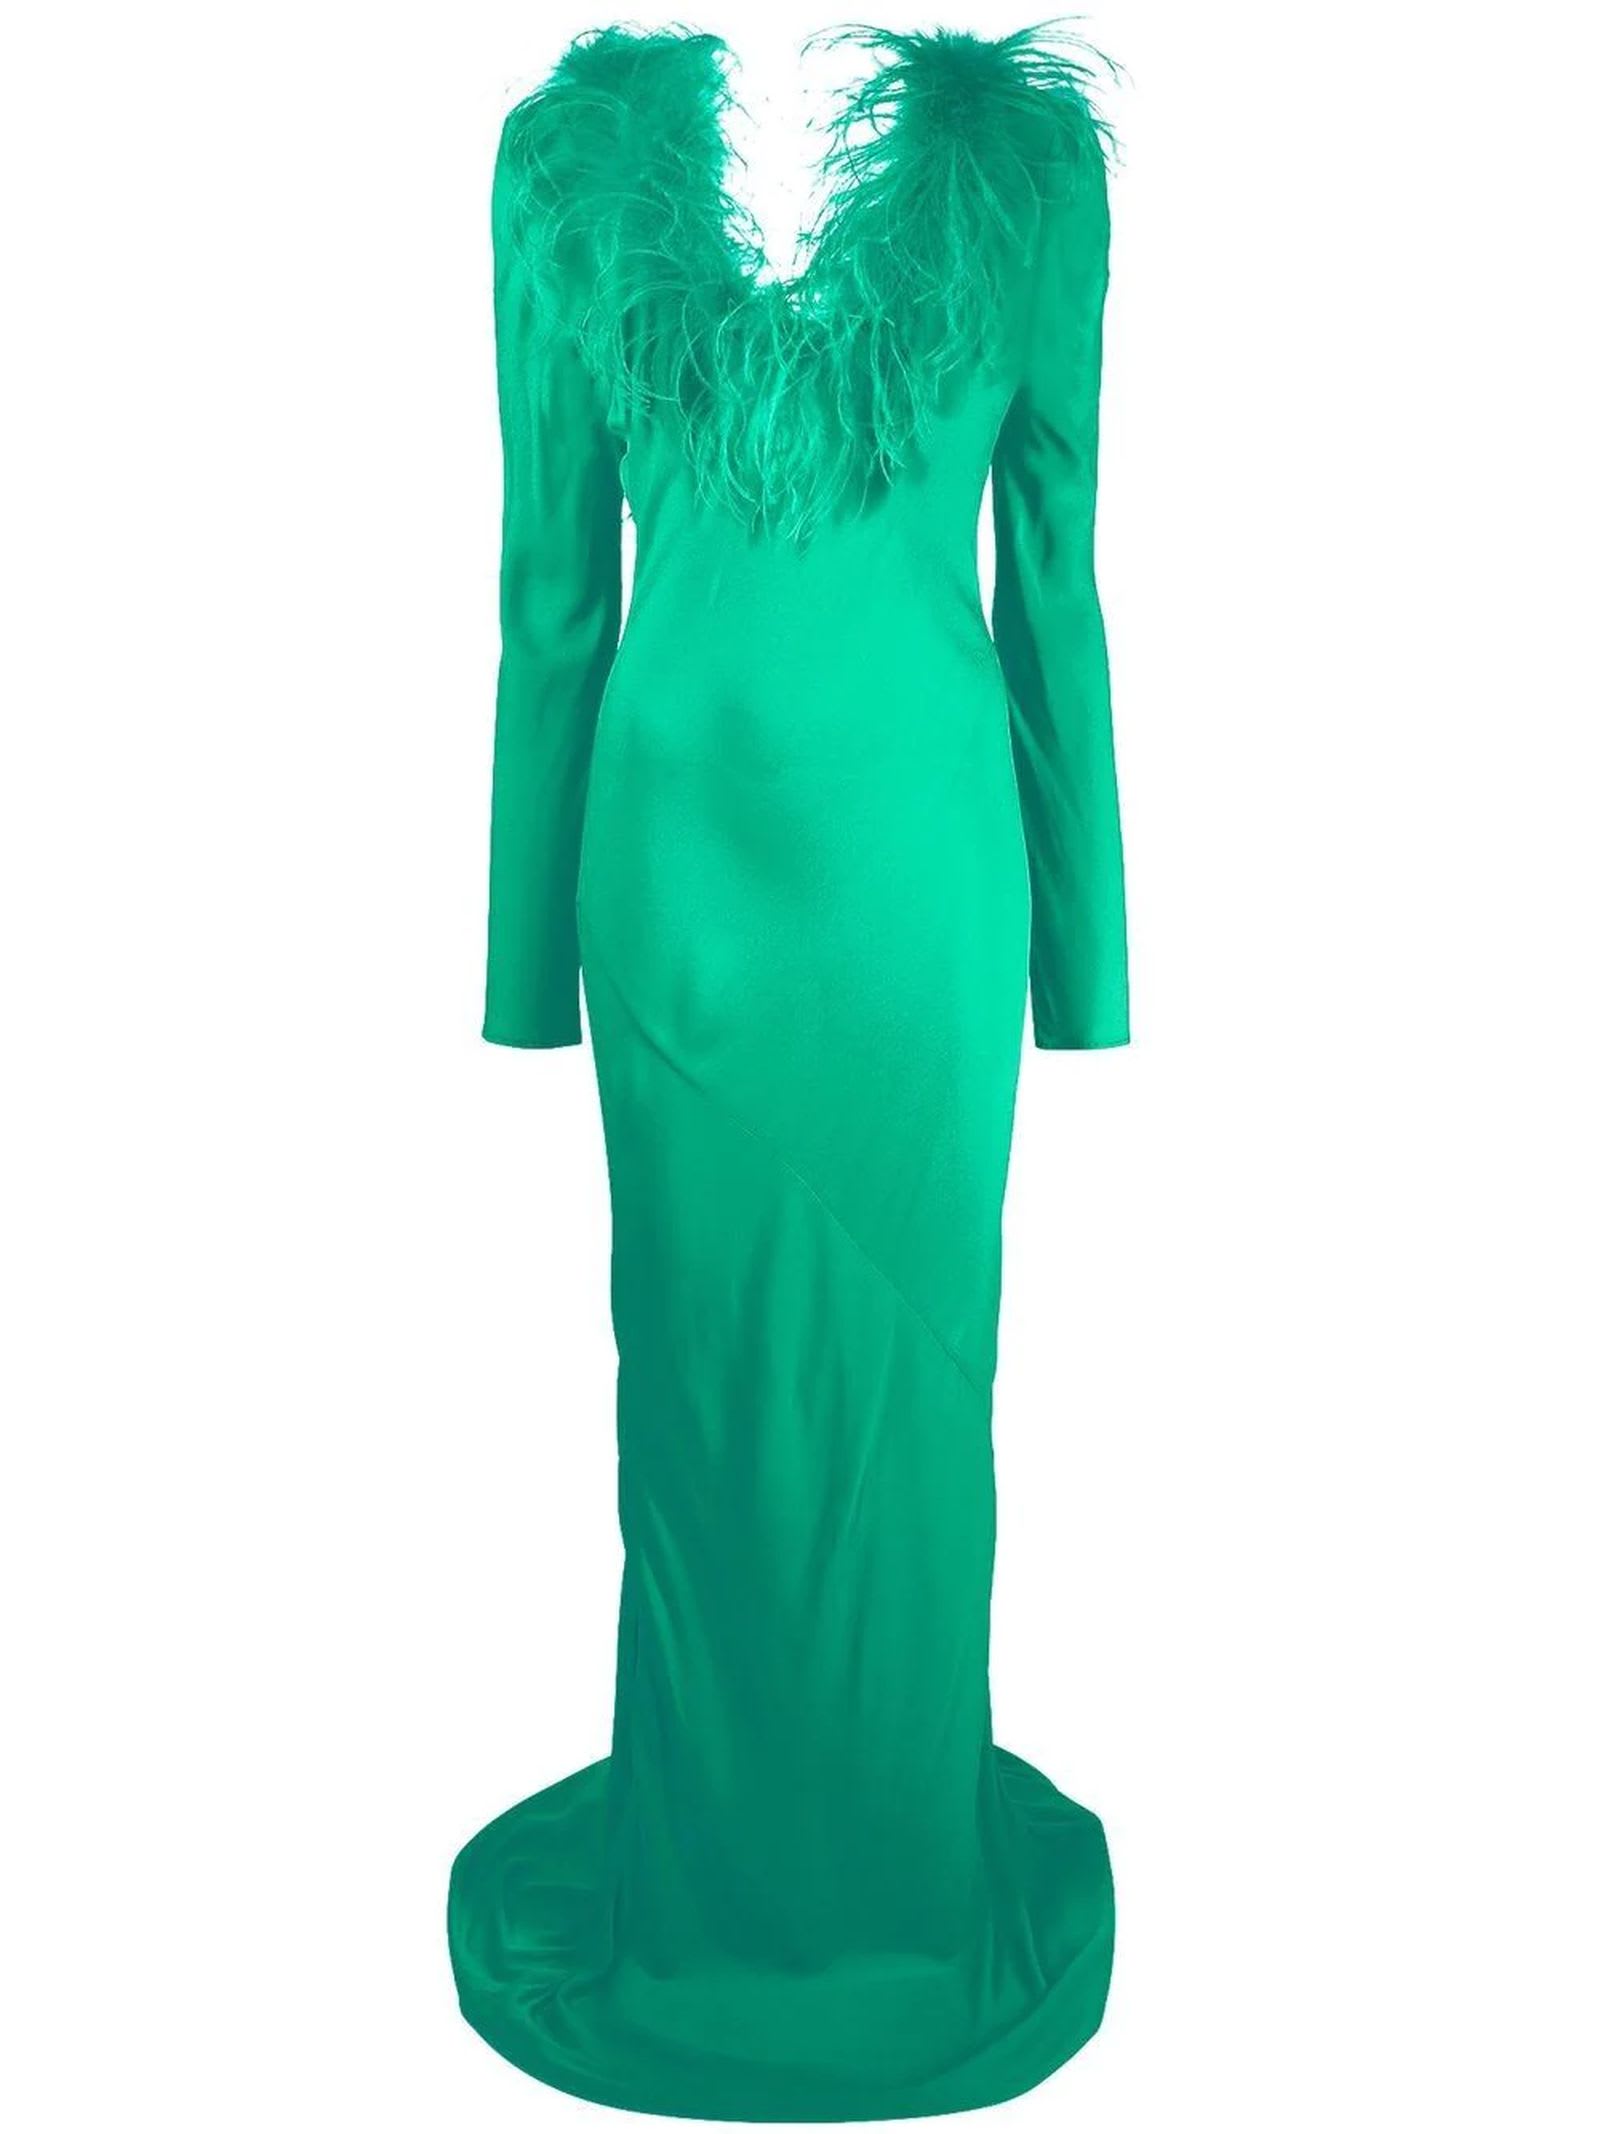 Giuseppe di Morabito Emerald Green Crepe Dress